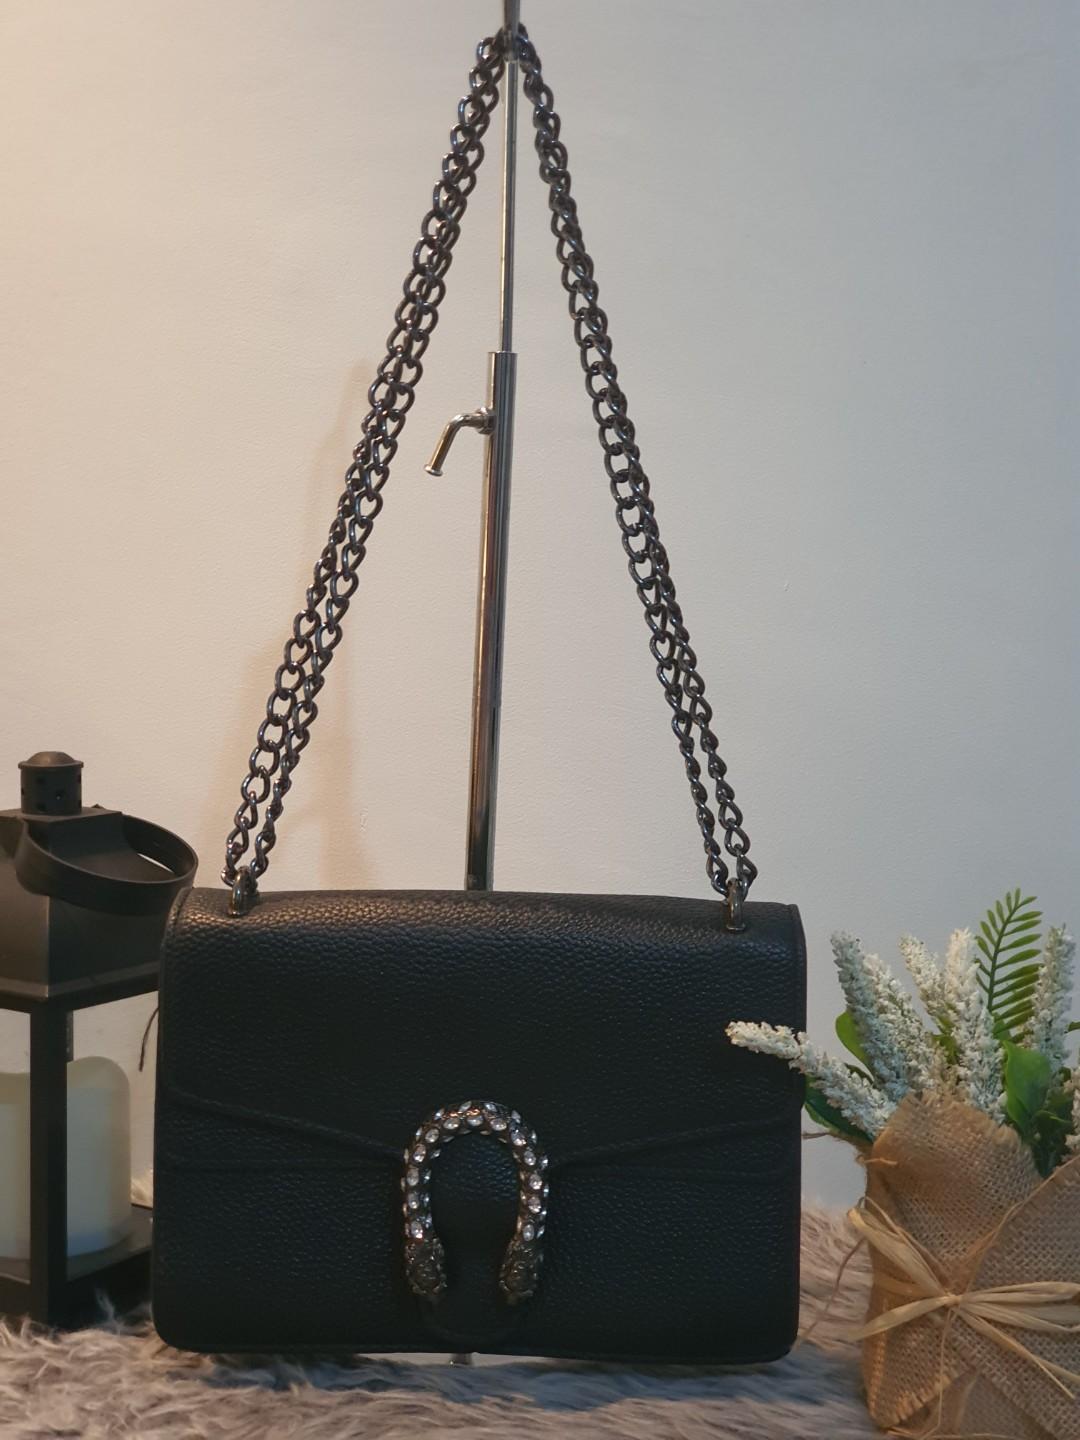 dionysus inspired bag